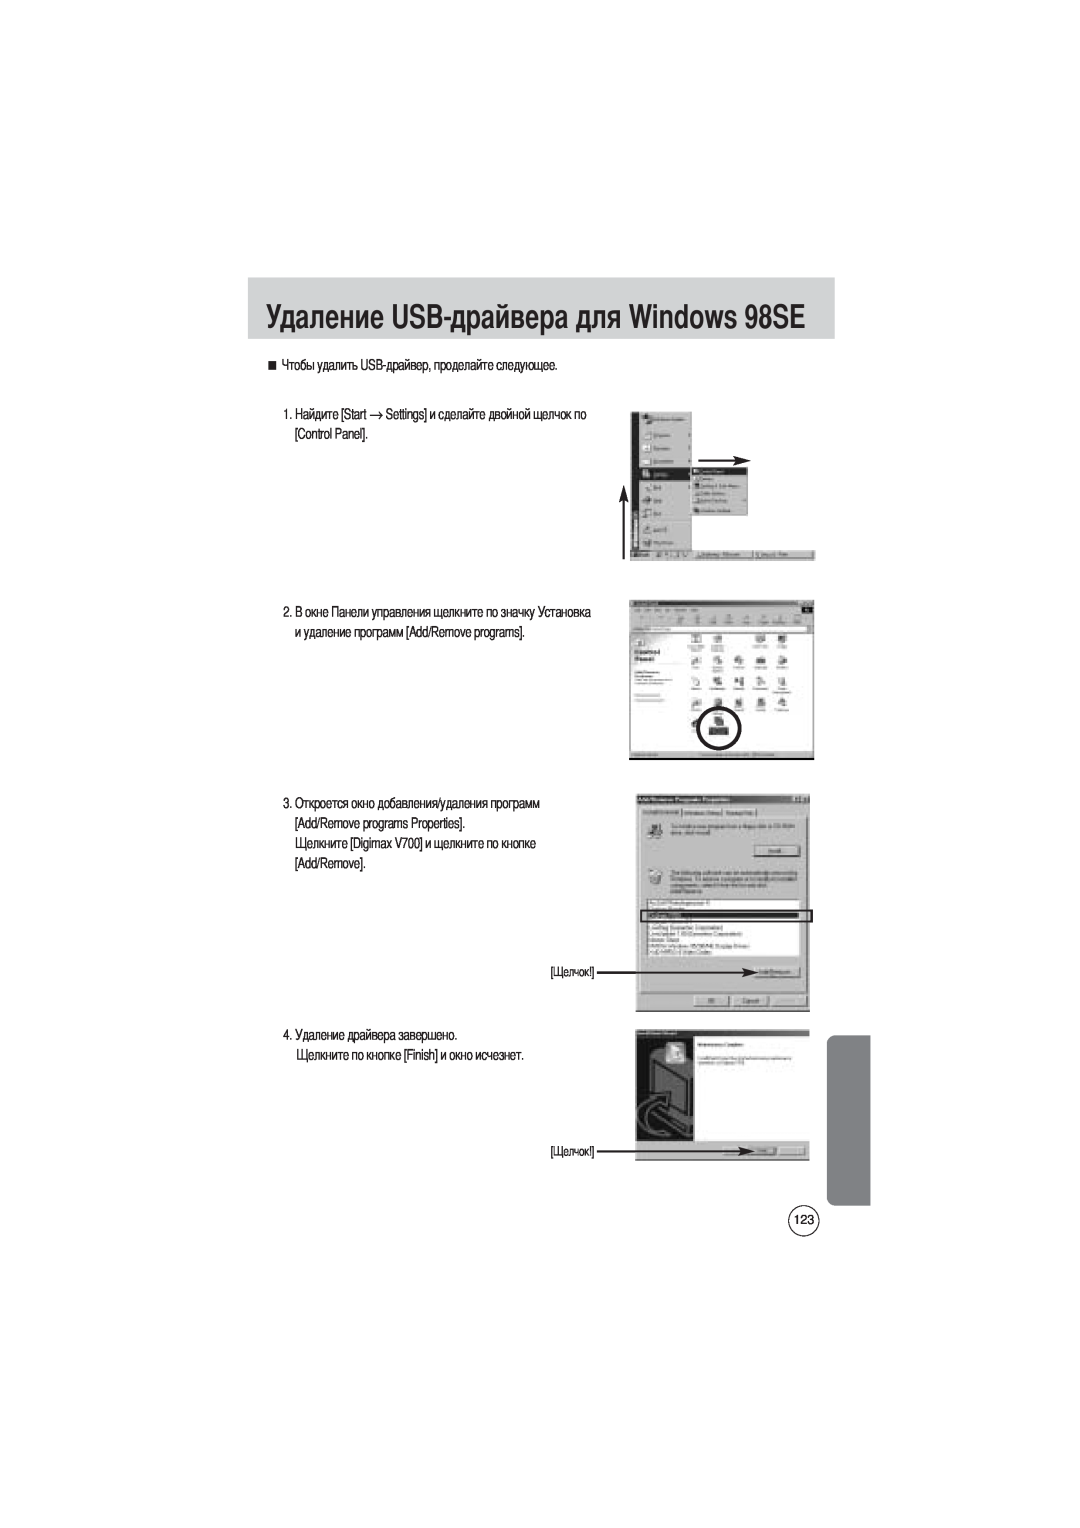 Samsung EC-V700ZUAA Удаление USB-драйвера для Windows 98SE, Start, и удаление программ Add/Remove programs, Control Panel 